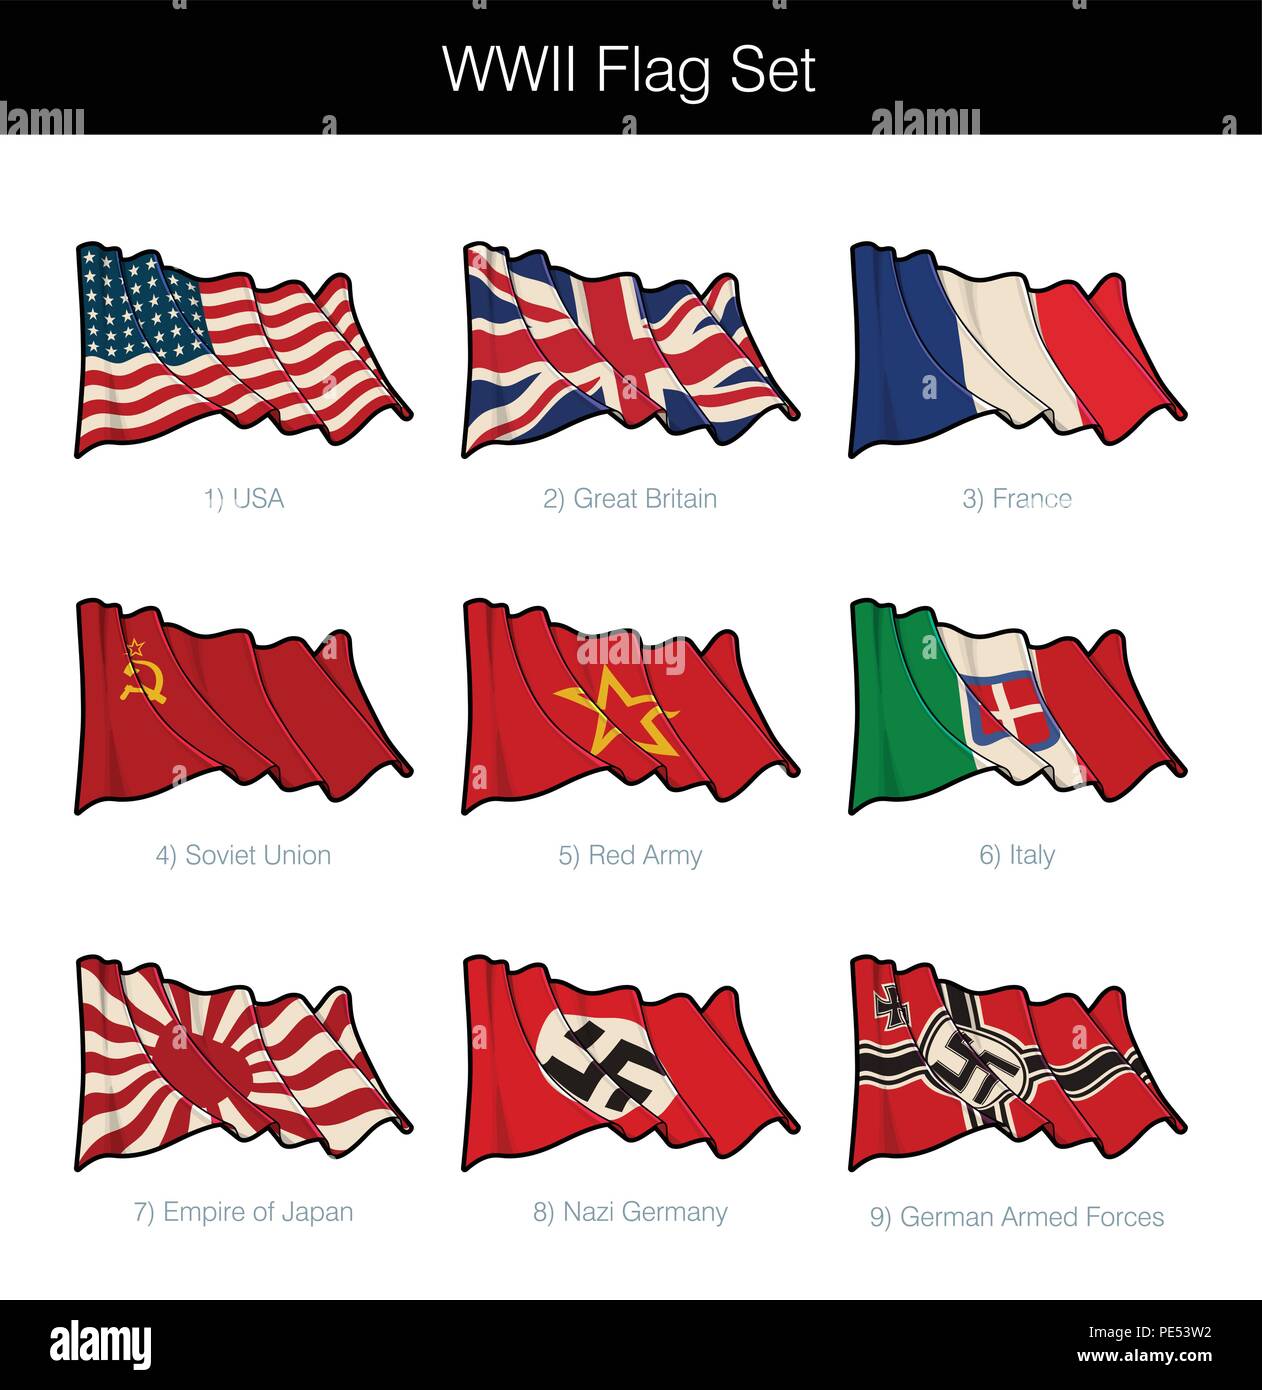 Seconda guerra mondiale sventola Bandiera Set. Il set include il flag da tutte le principali asse e alleati ai partecipanti. Icone vettoriali tutti gli elementi ordinatamente su strati n Gr Illustrazione Vettoriale